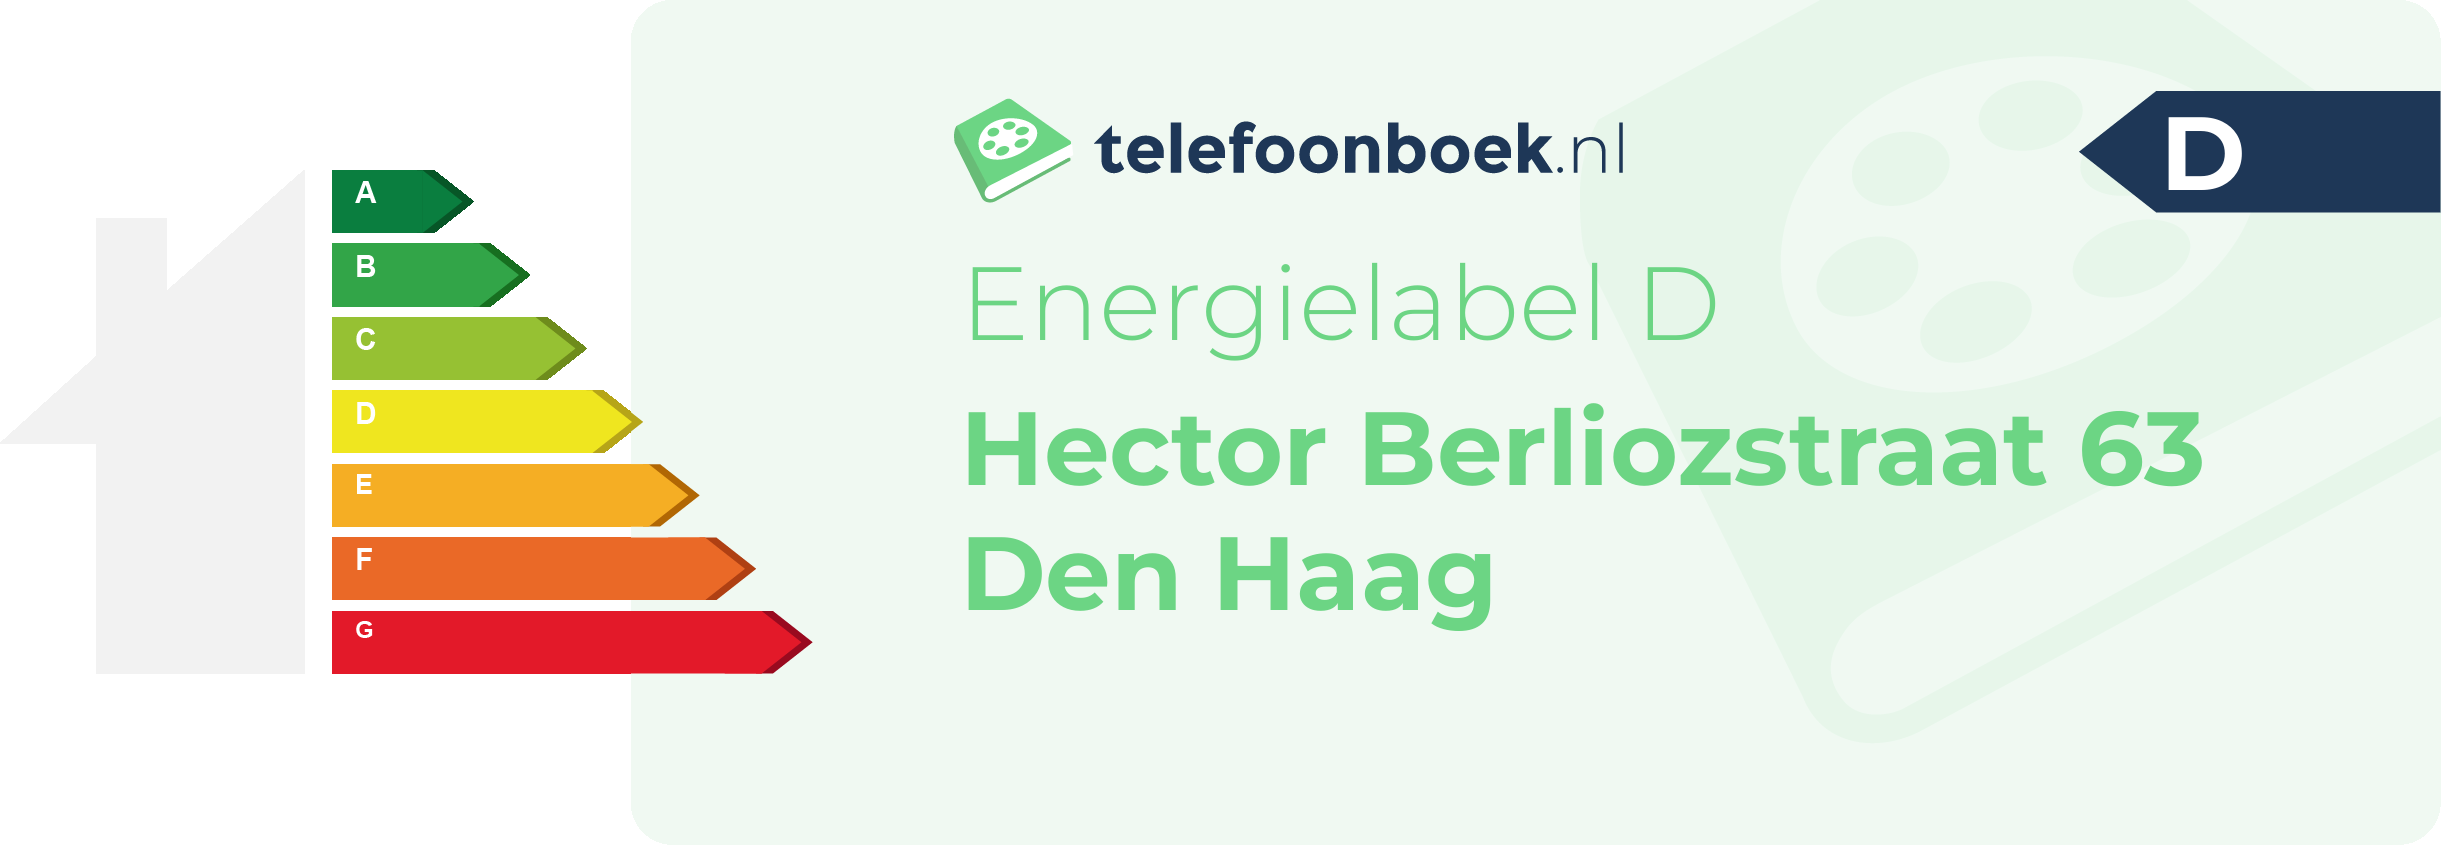 Energielabel Hector Berliozstraat 63 Den Haag